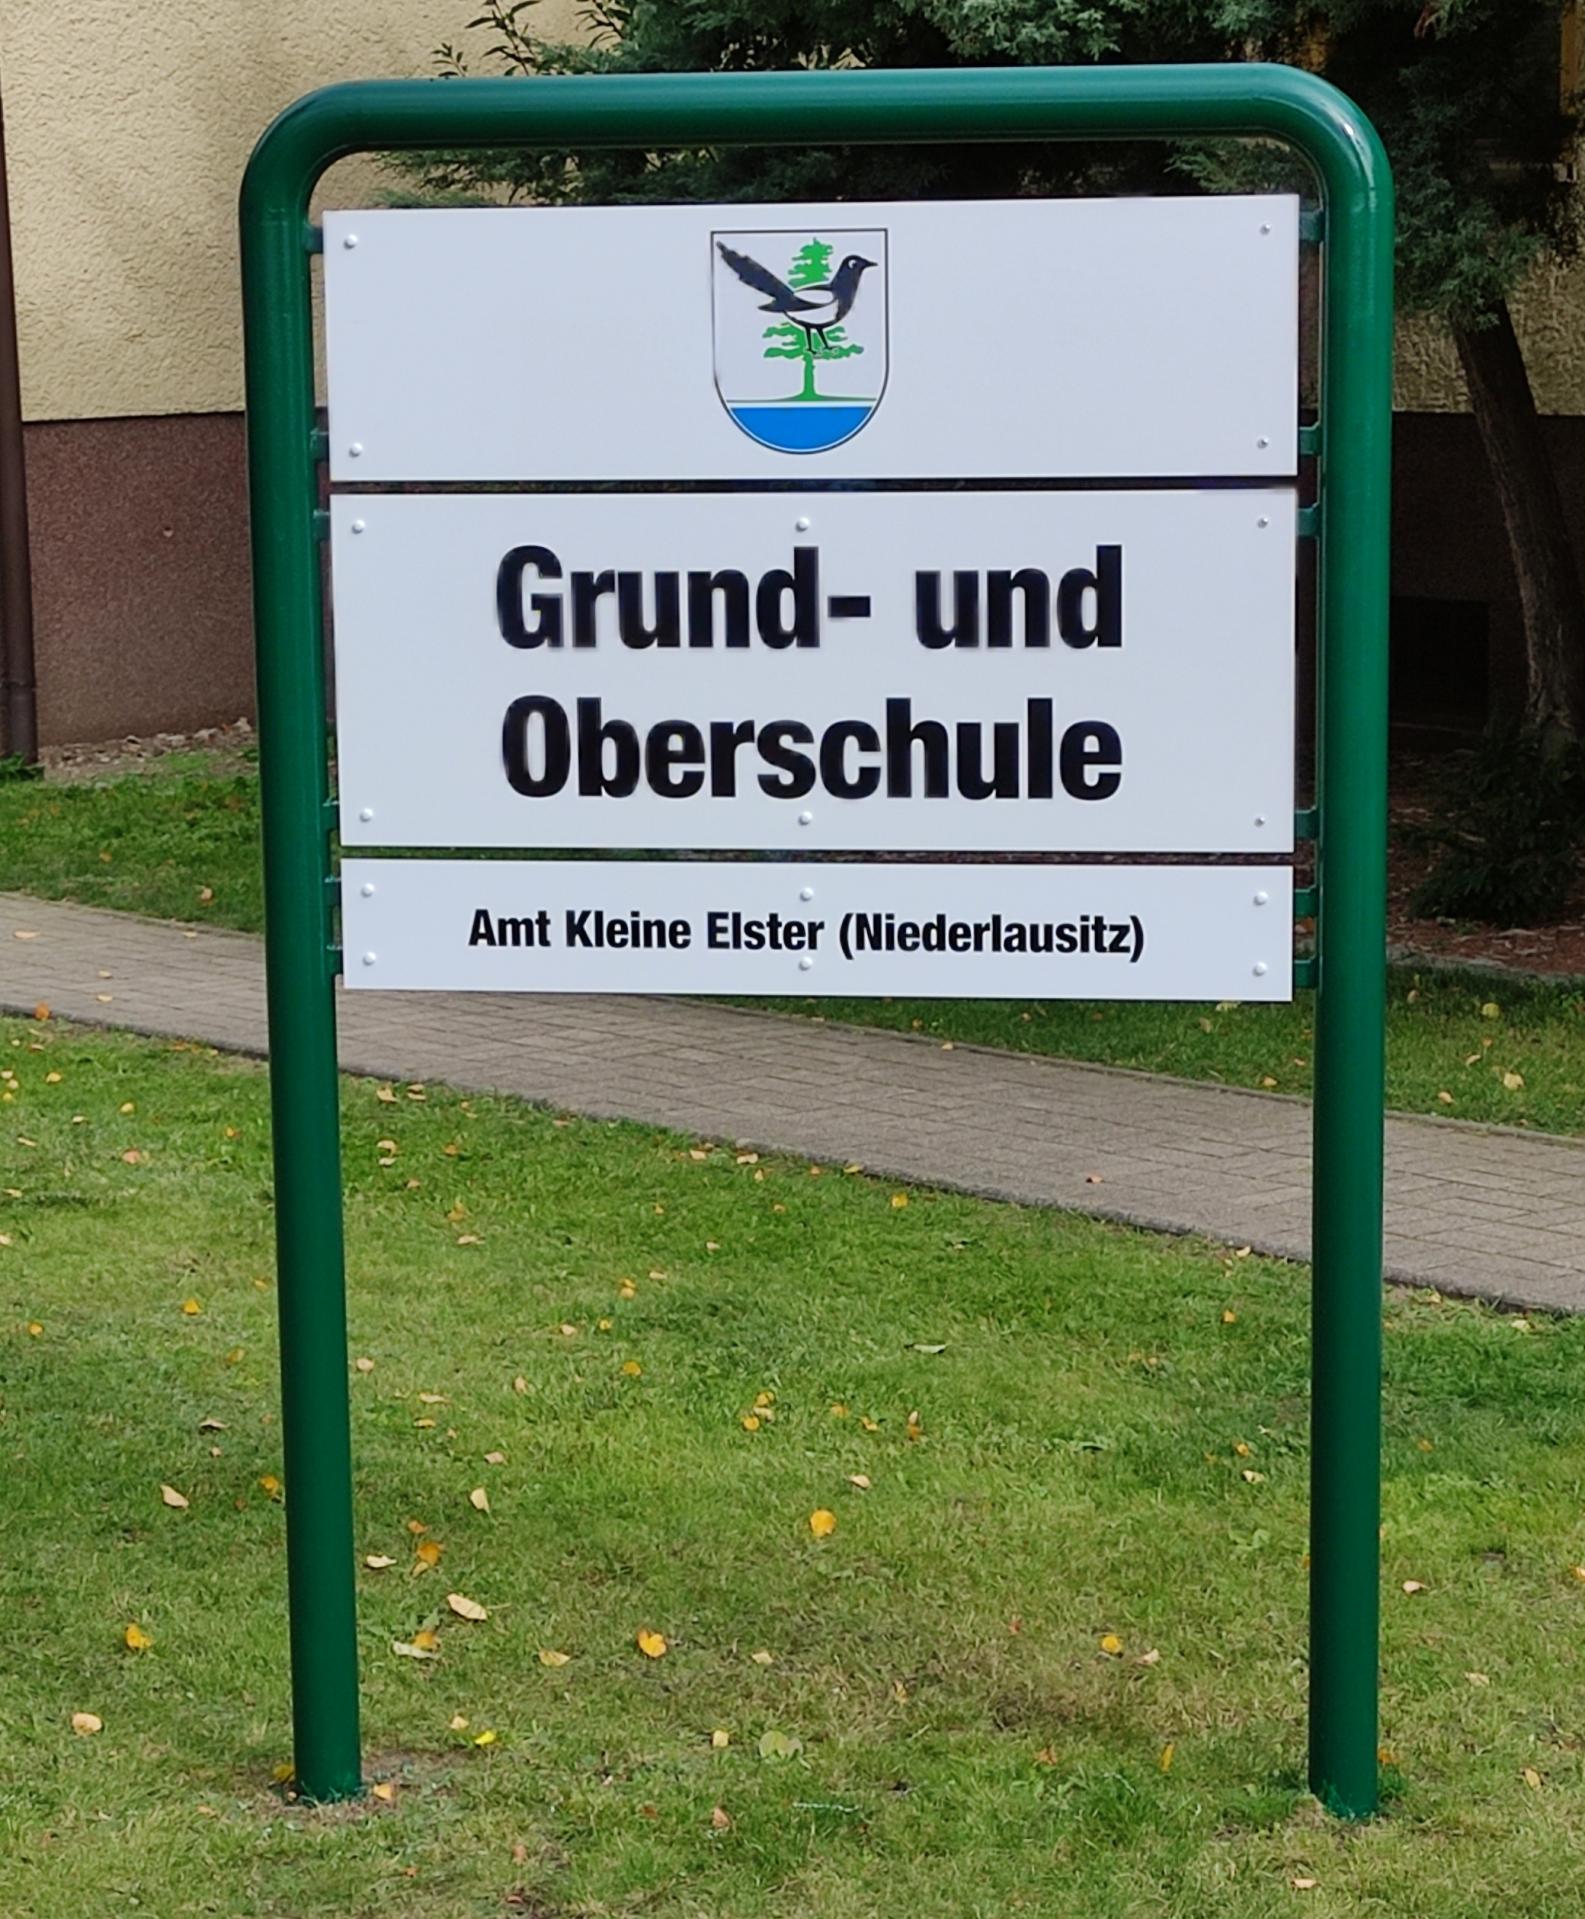 "Grund- und Oberschule"